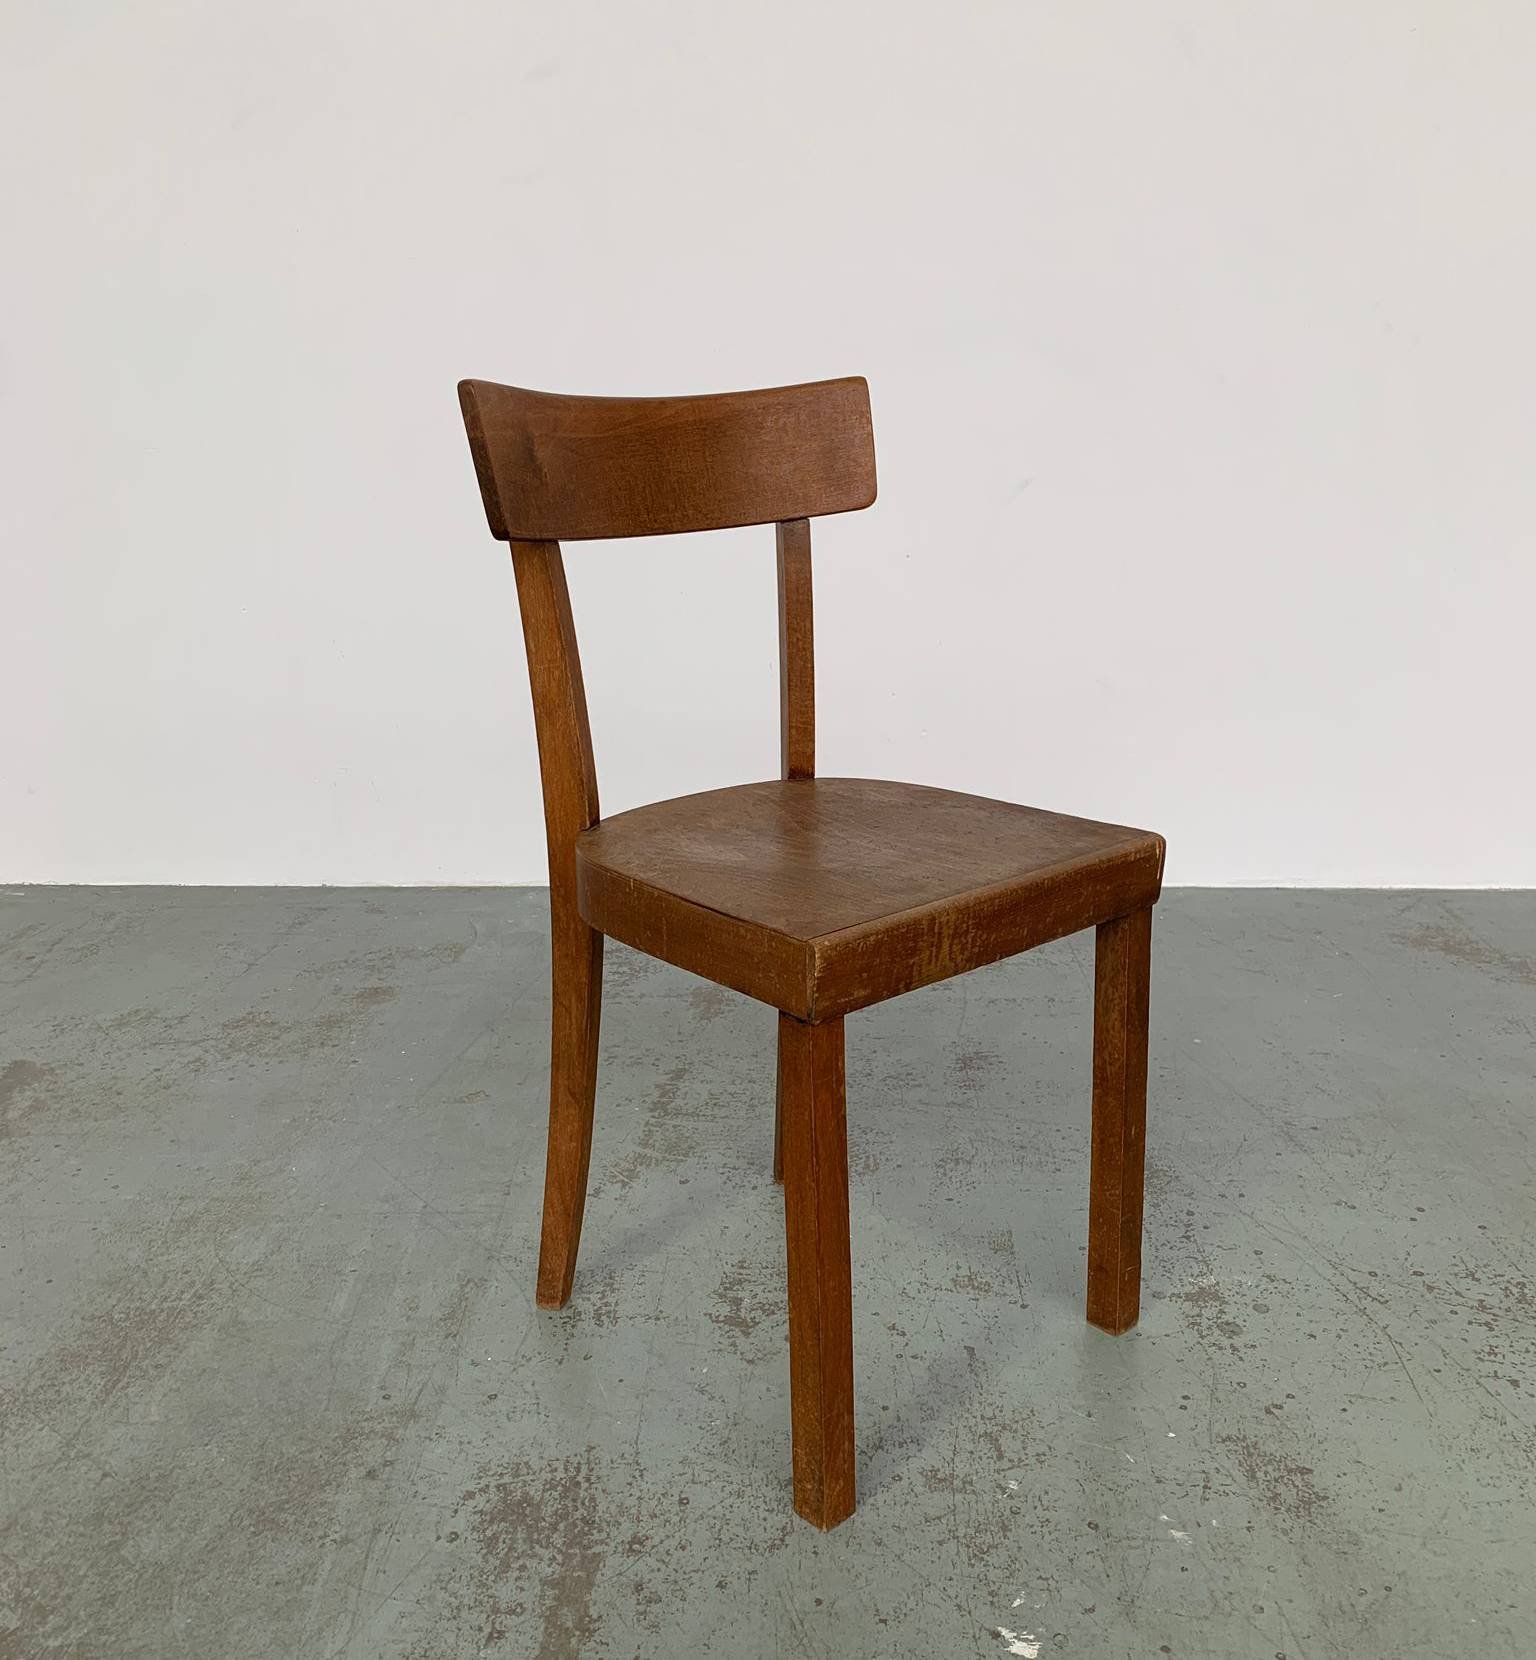 German Wooden Chair.jpg